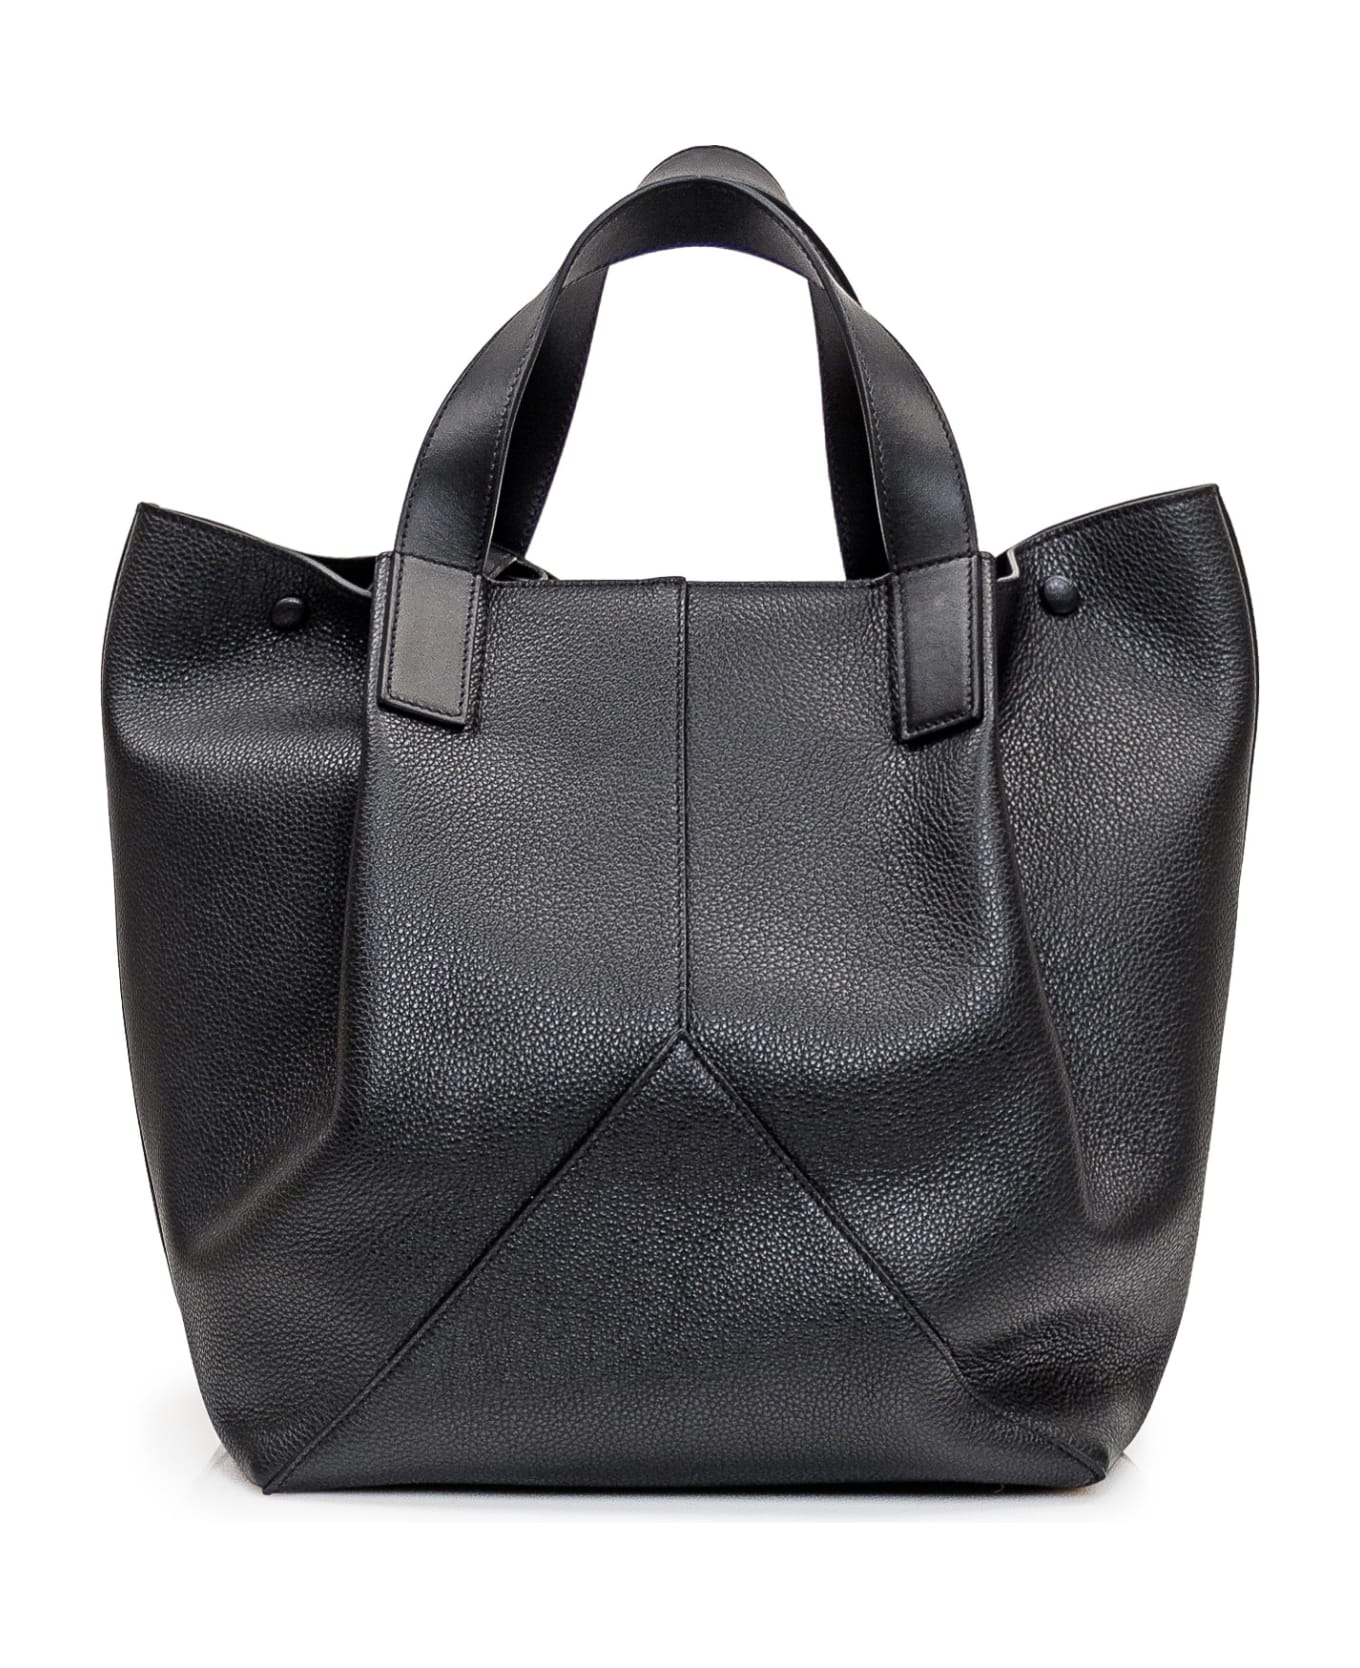 Victoria Beckham Medium Tote Bag - BLACK